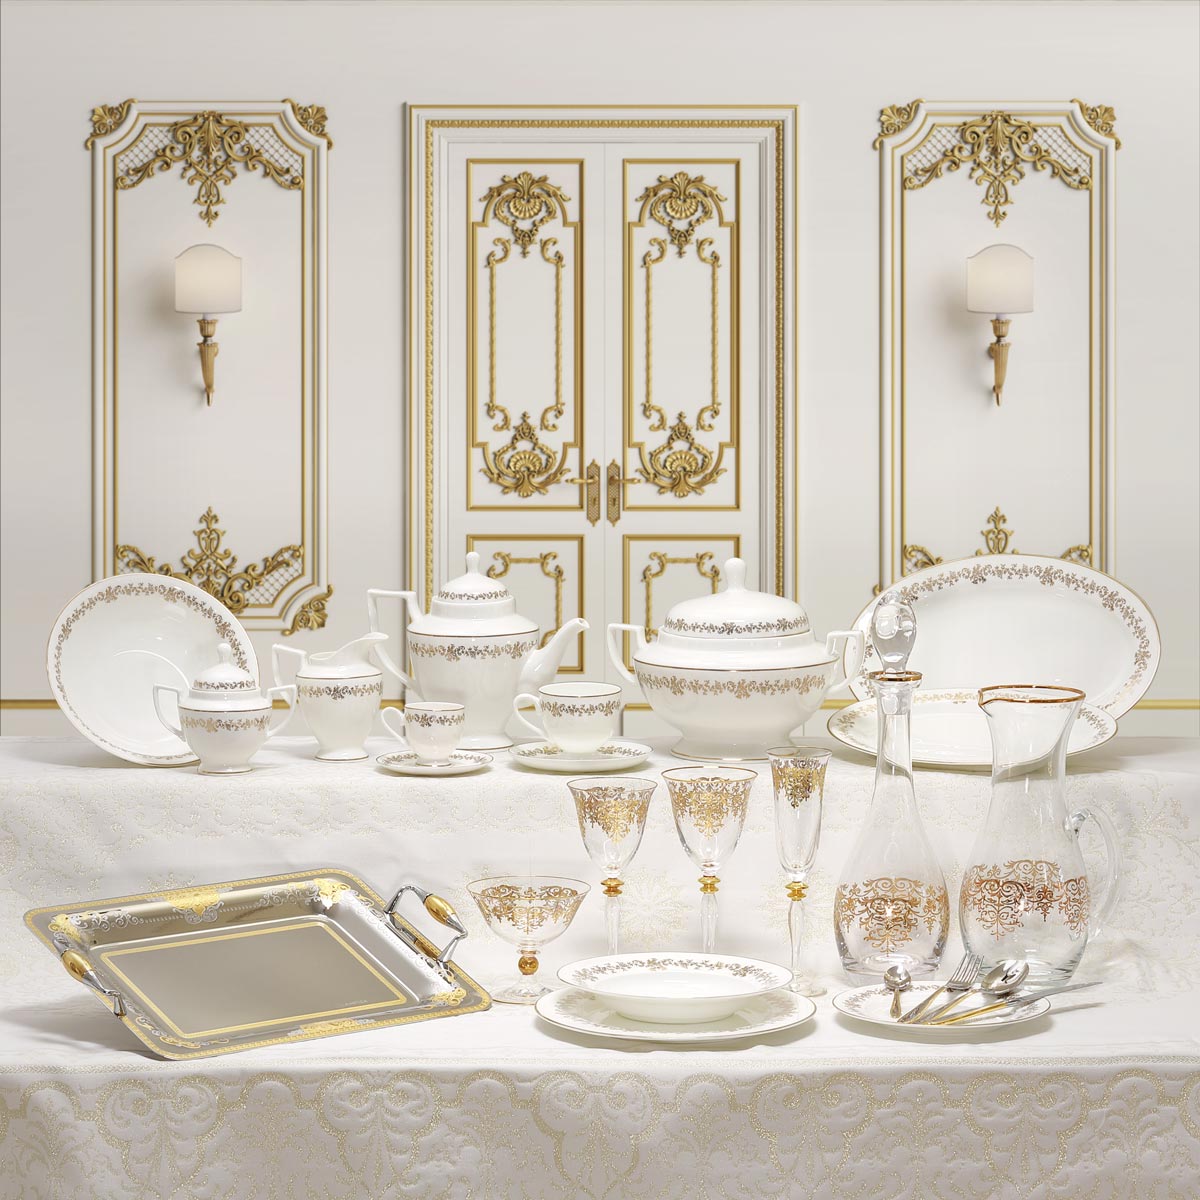 Servizio piatti e bicchieri classico decorato in oro - Elegance